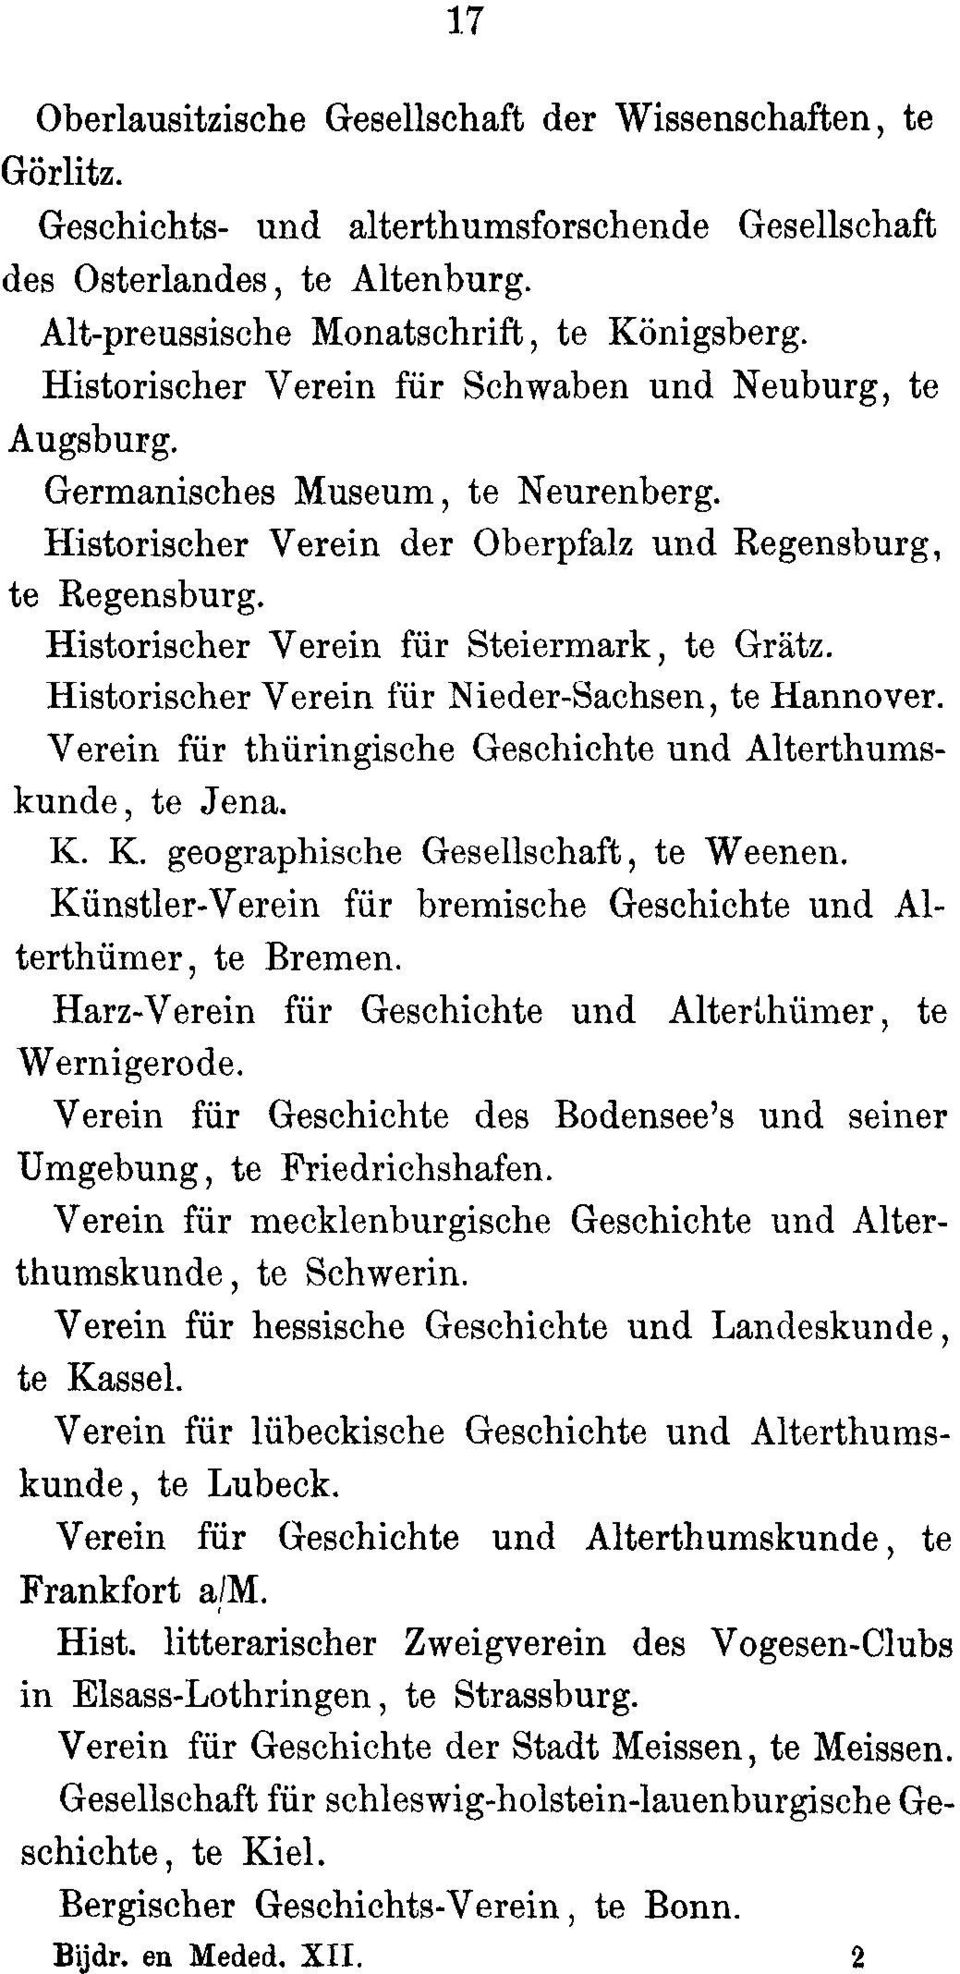 Historiseher Verein fur Steiermark, to Gratz. Historiseher Verein fur Nieder-Sachsen, to ilannover. Verein fur thuringische Geschichts and Alterthumskunde, to Jena. K.